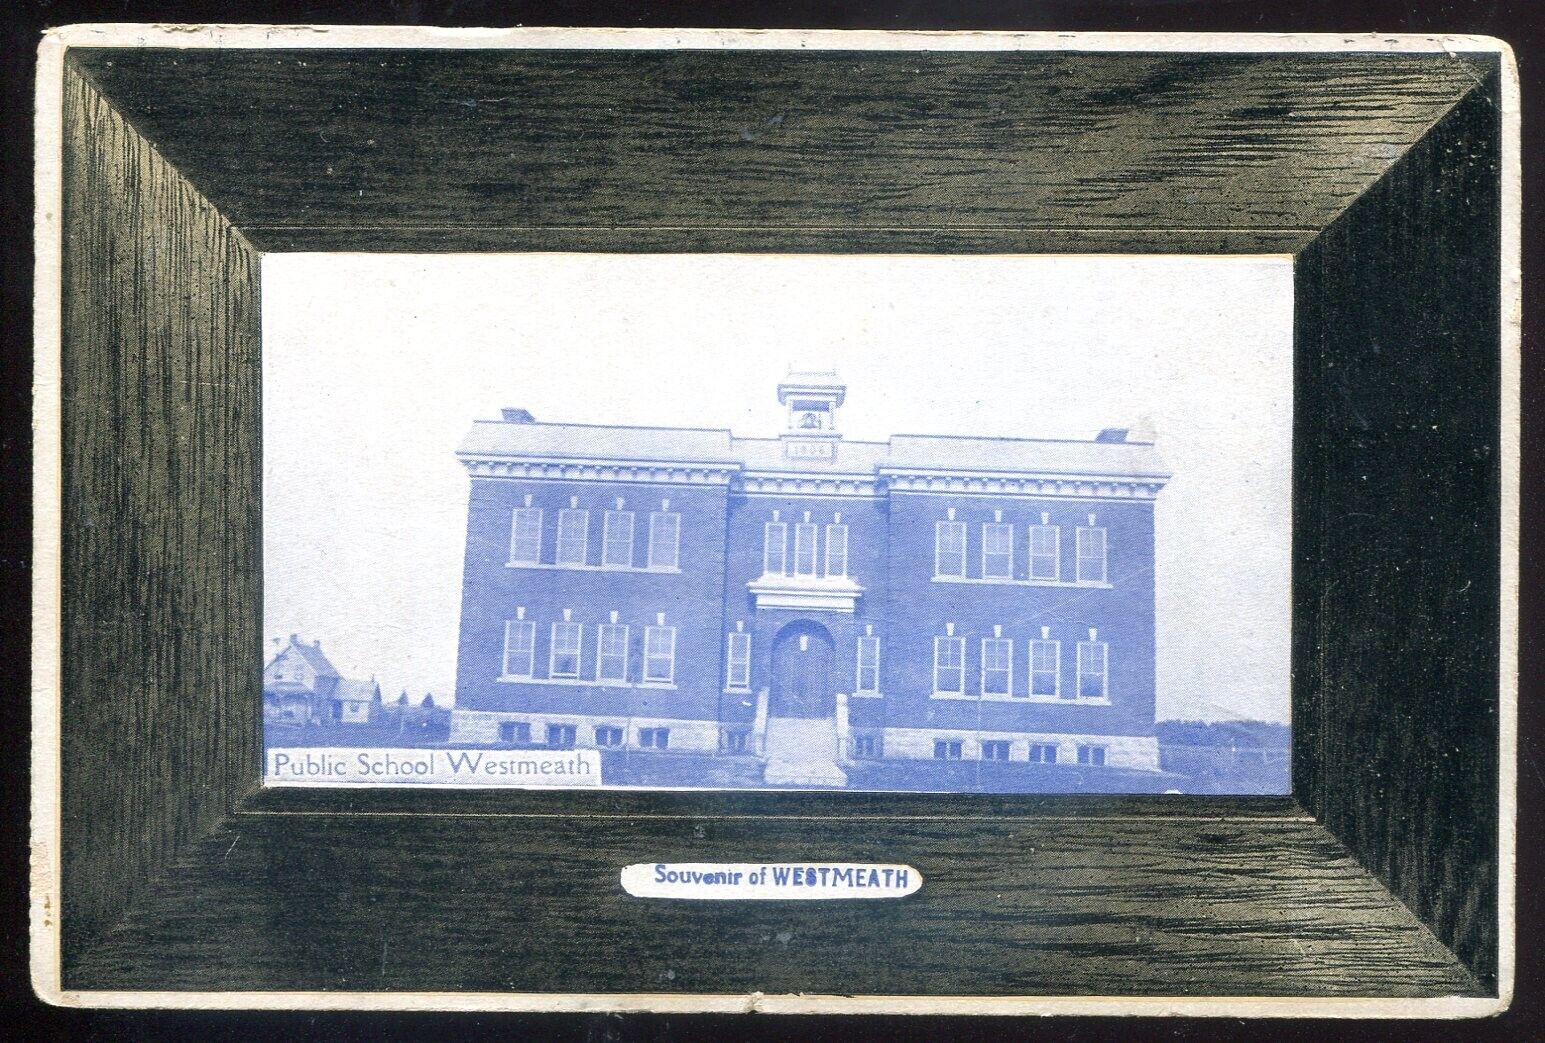 WESTMEATH Ontario Postcard 1910s Public School by Atkinson